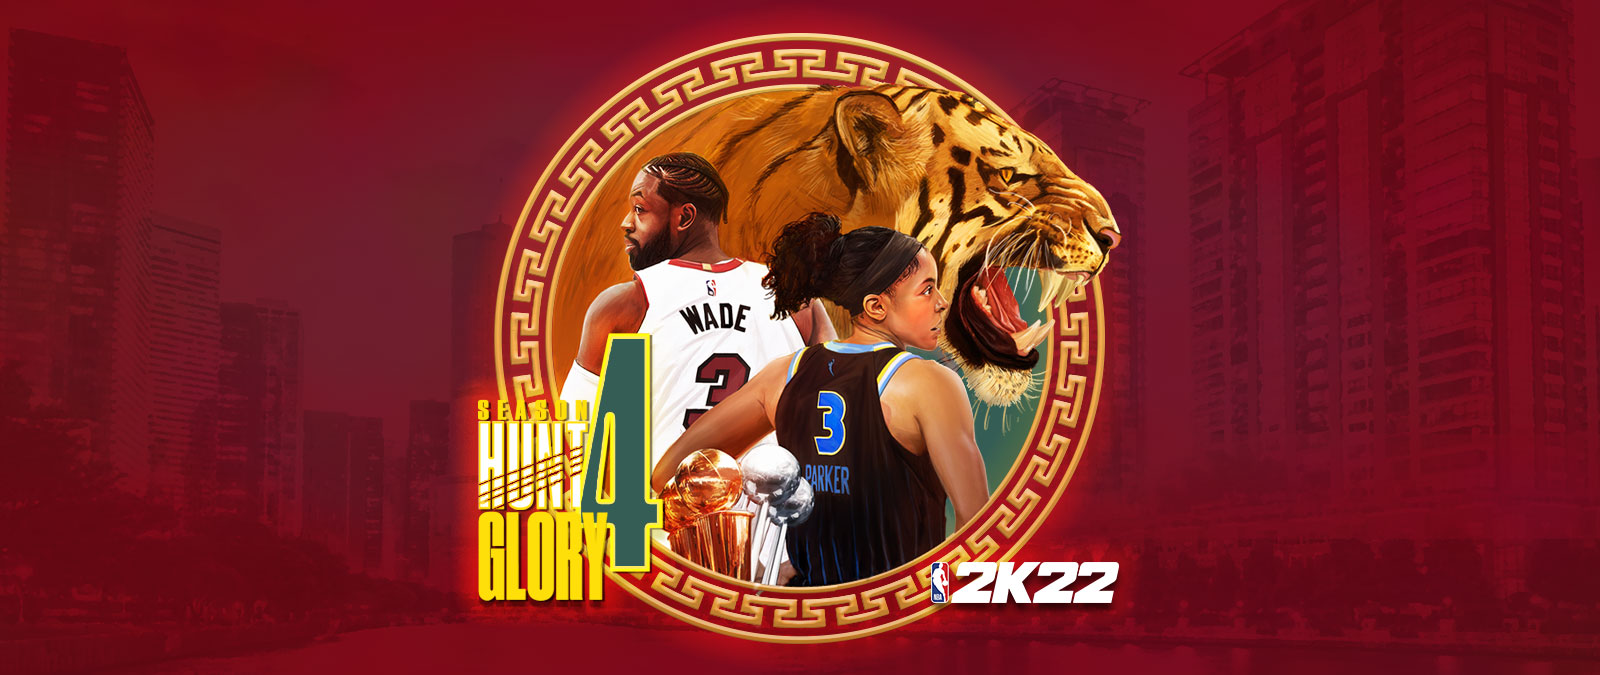 NBA 2K22, temporada 4: Hunt 4 Glory, un elemento gráfico circular colocado sobre un paisaje urbano de tonos rojos que representa a un tigre gruñendo, y a Dwayne Wade y Candace Parker de espaldas. 